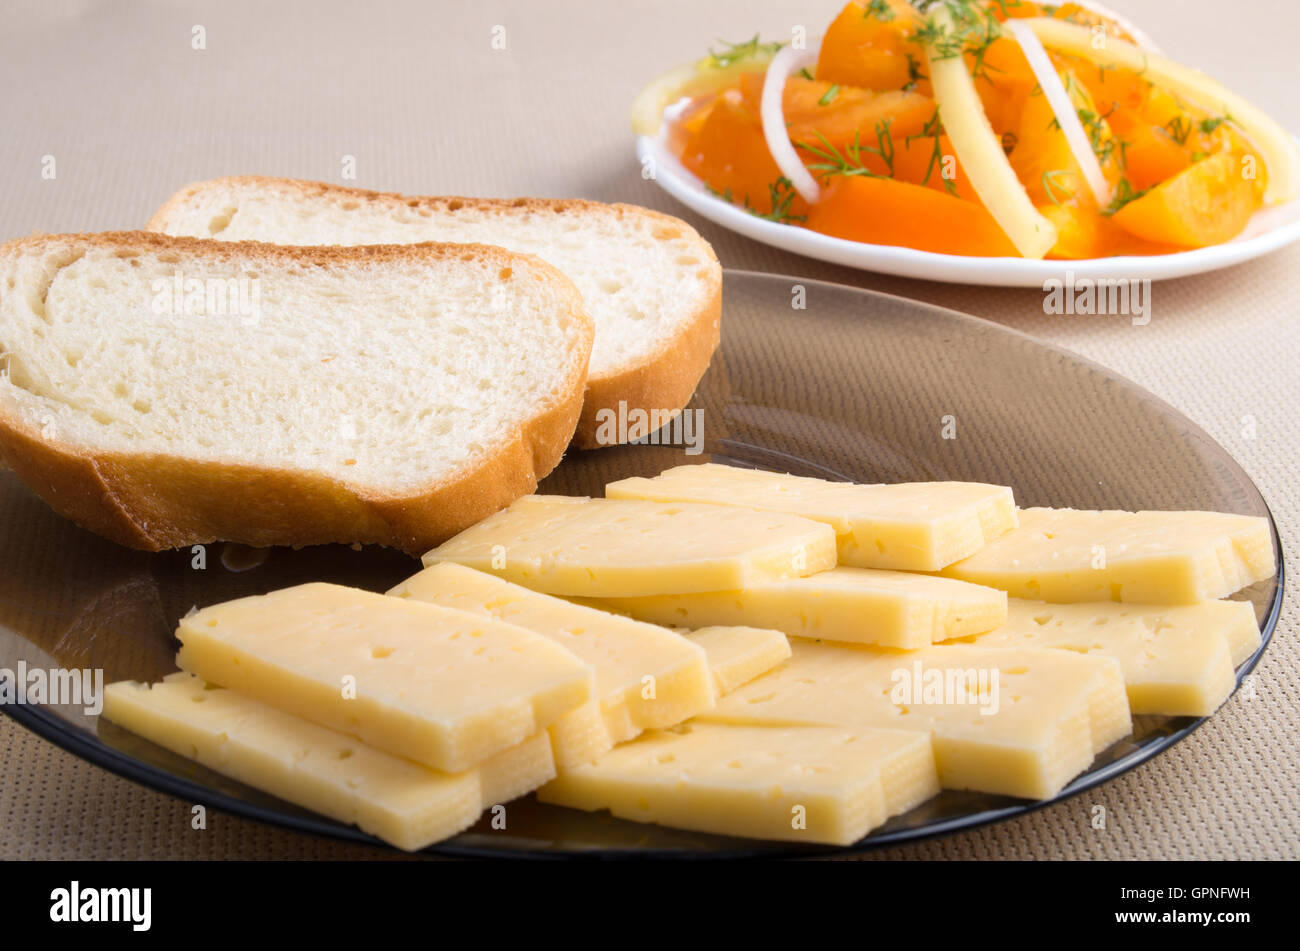 Vue rapprochée sur les collations des veggie - une assiette avec des morceaux de pain et de fromage et de légumes avec salade tomate brutes Banque D'Images